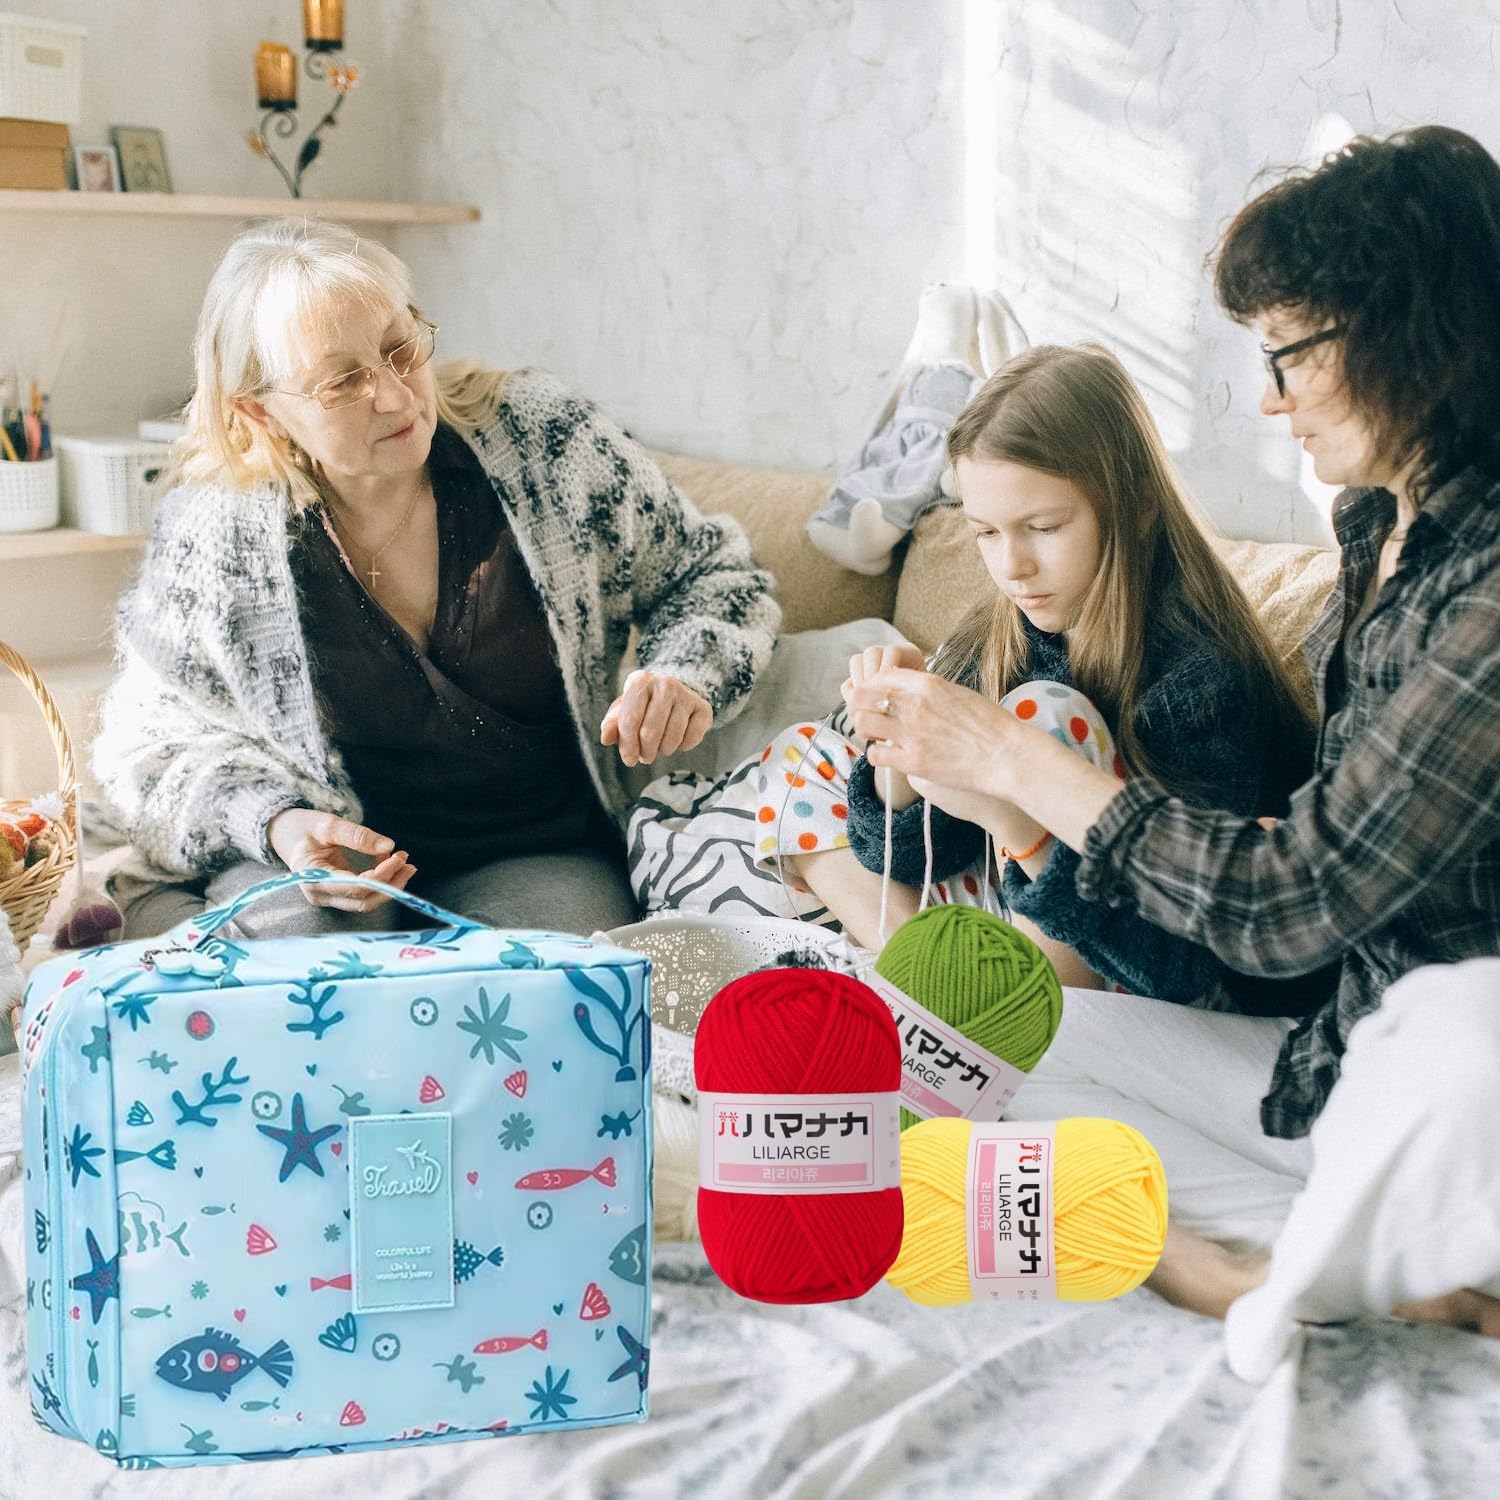 Cdrompy 65Pcs Crochet Kit for Beginners,Crochet Kit for Beginners Adul –  WoodArtSupply